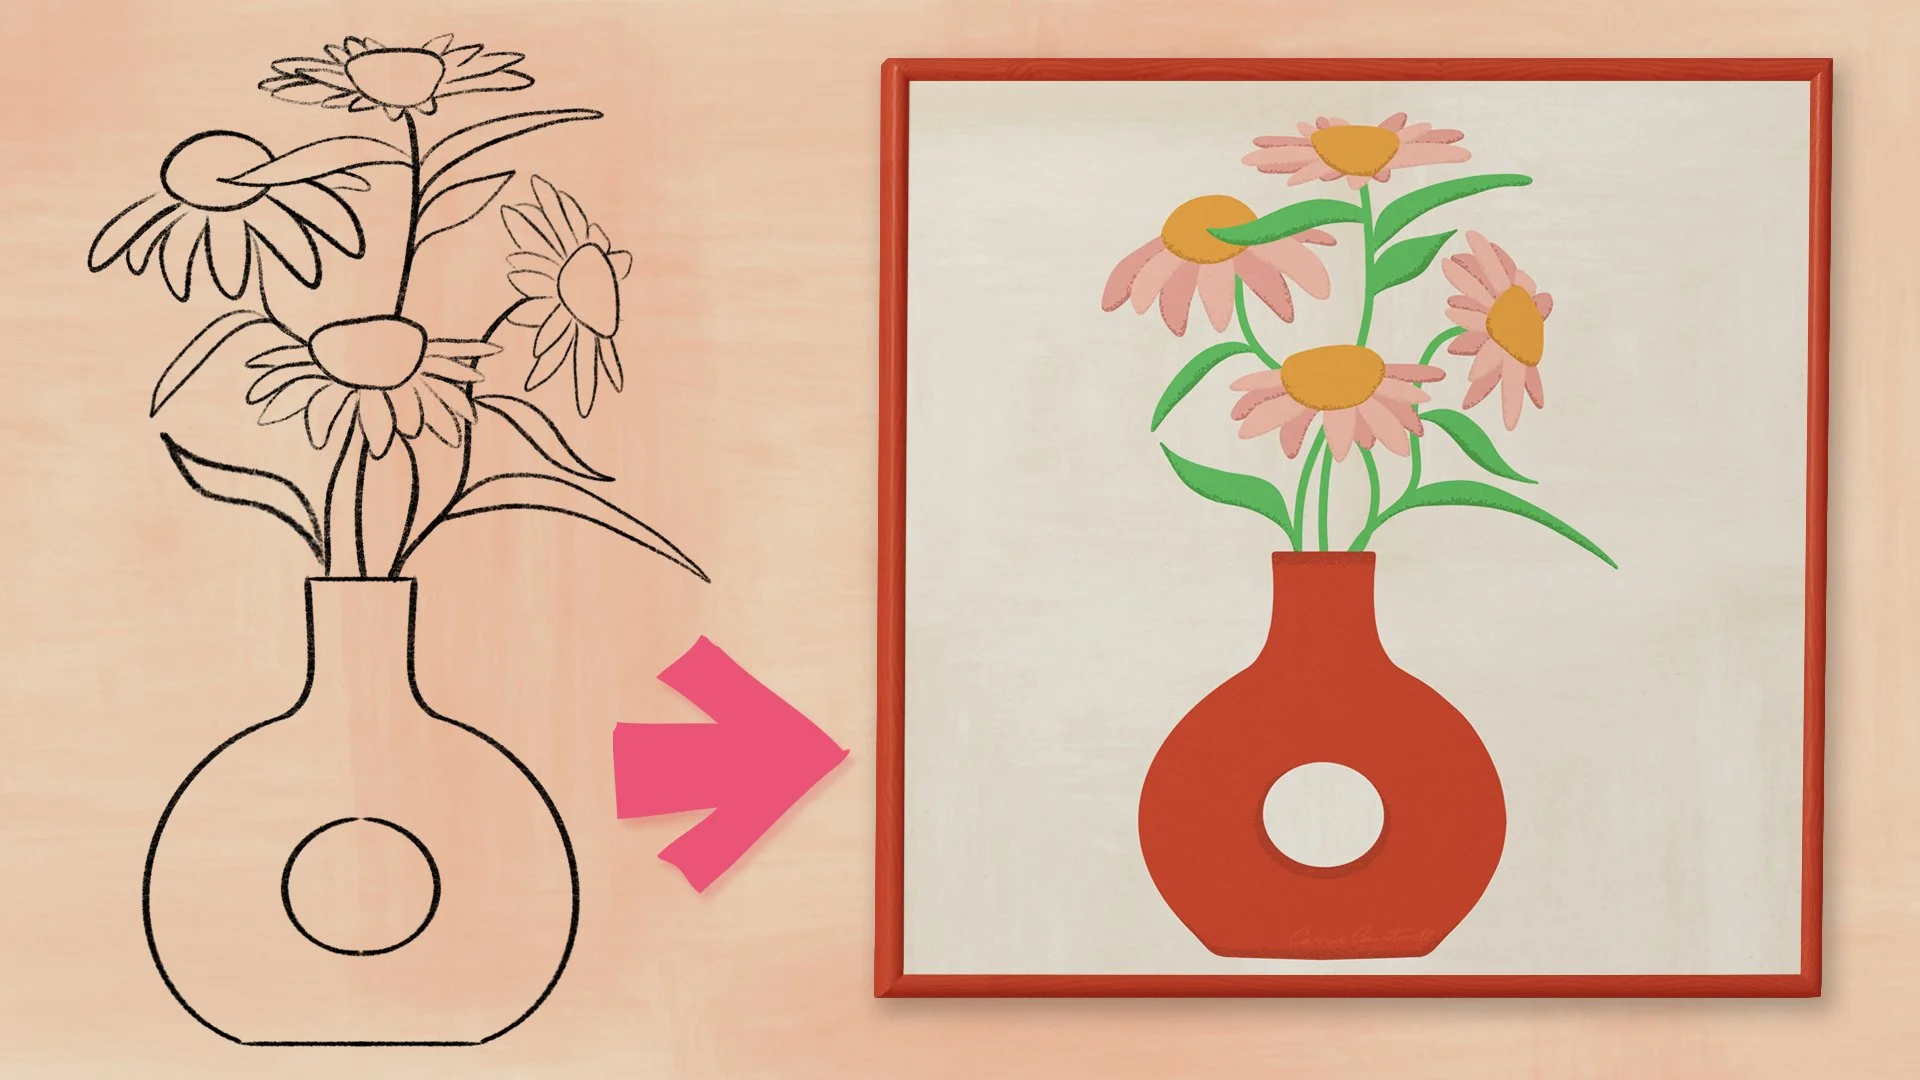 آموزش قدرت گل: طراحی هنرهای گلدار یکپارچهسازی با سیستمعامل مد روز در Procreate برای چاپ در صورت تقاضا